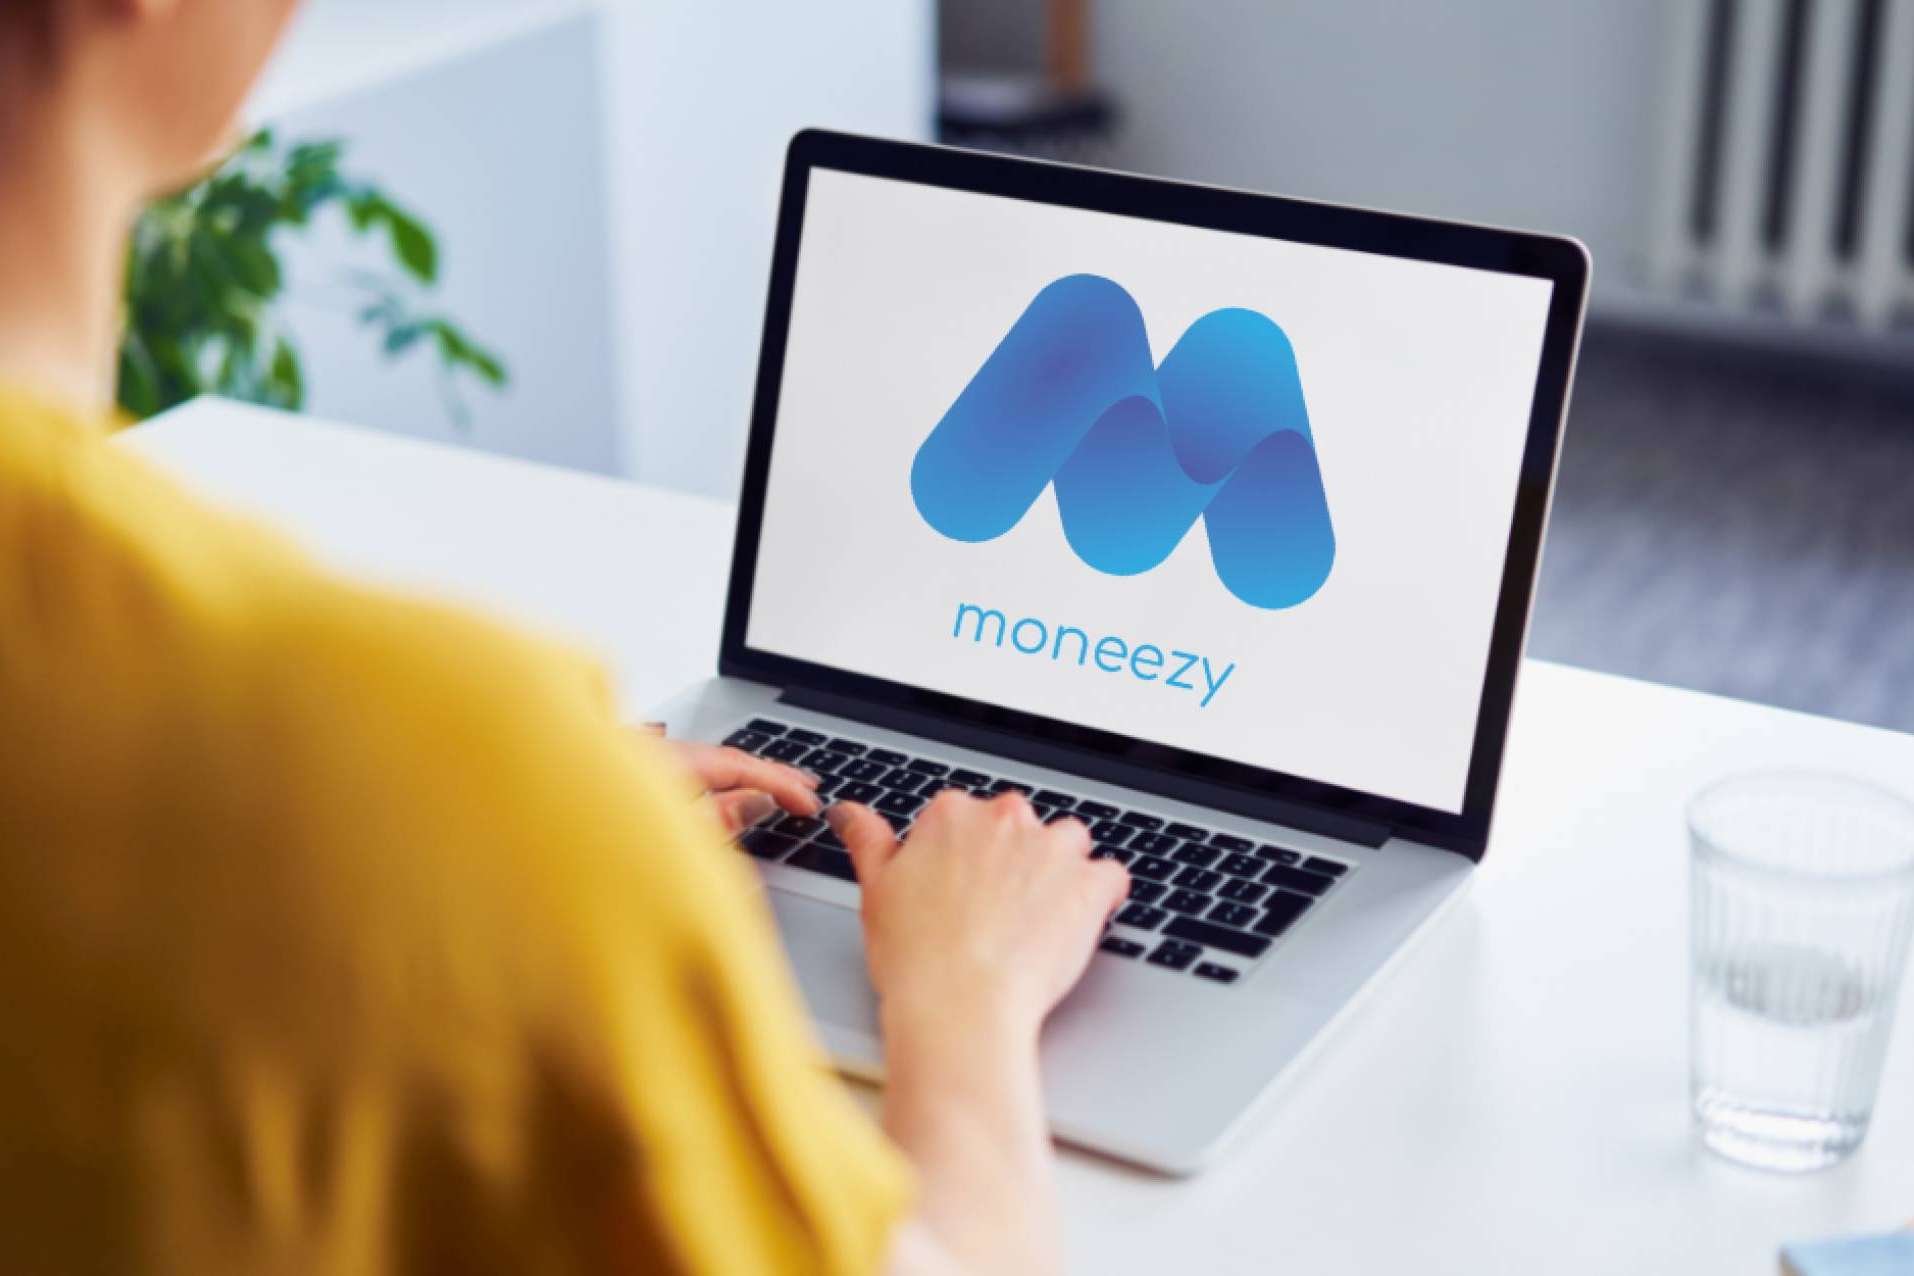 Moneezy compara productos financieros al instante